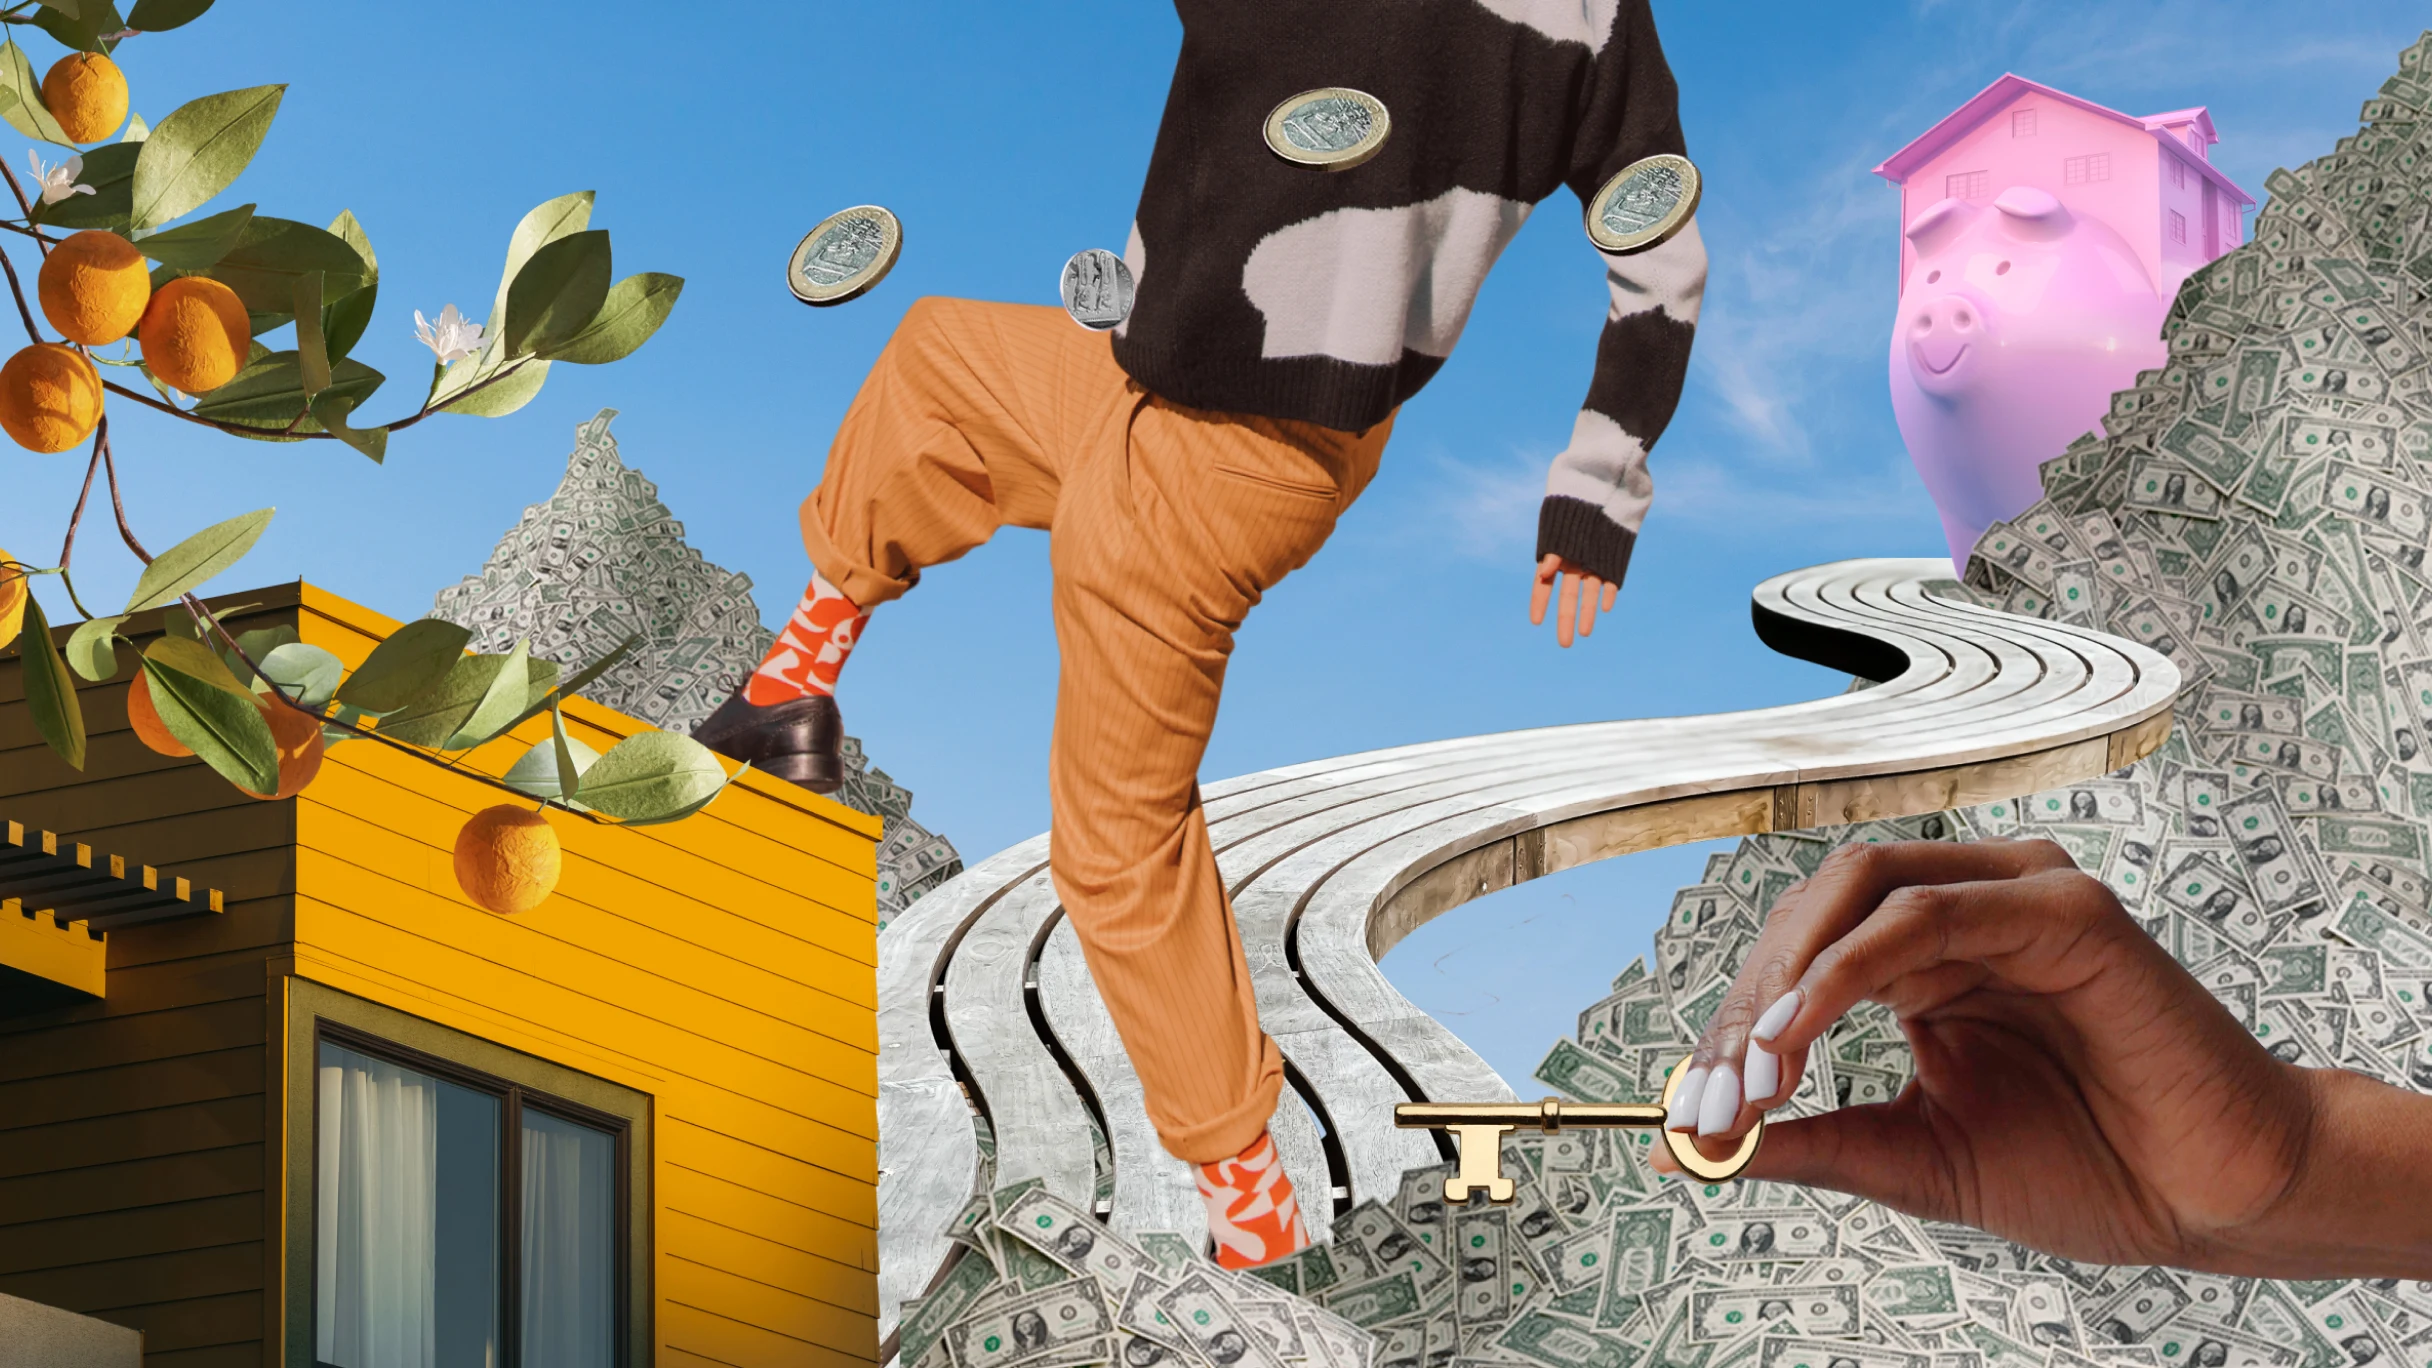 Un collage extravagante de un naranjo, pilas de dólares estadounidenses, camino sinuoso que lleva a una alcancía de cerdito, monedas de euro flotantes, un hombre con un pie sobre una casa y manos negras agarrando una llave.